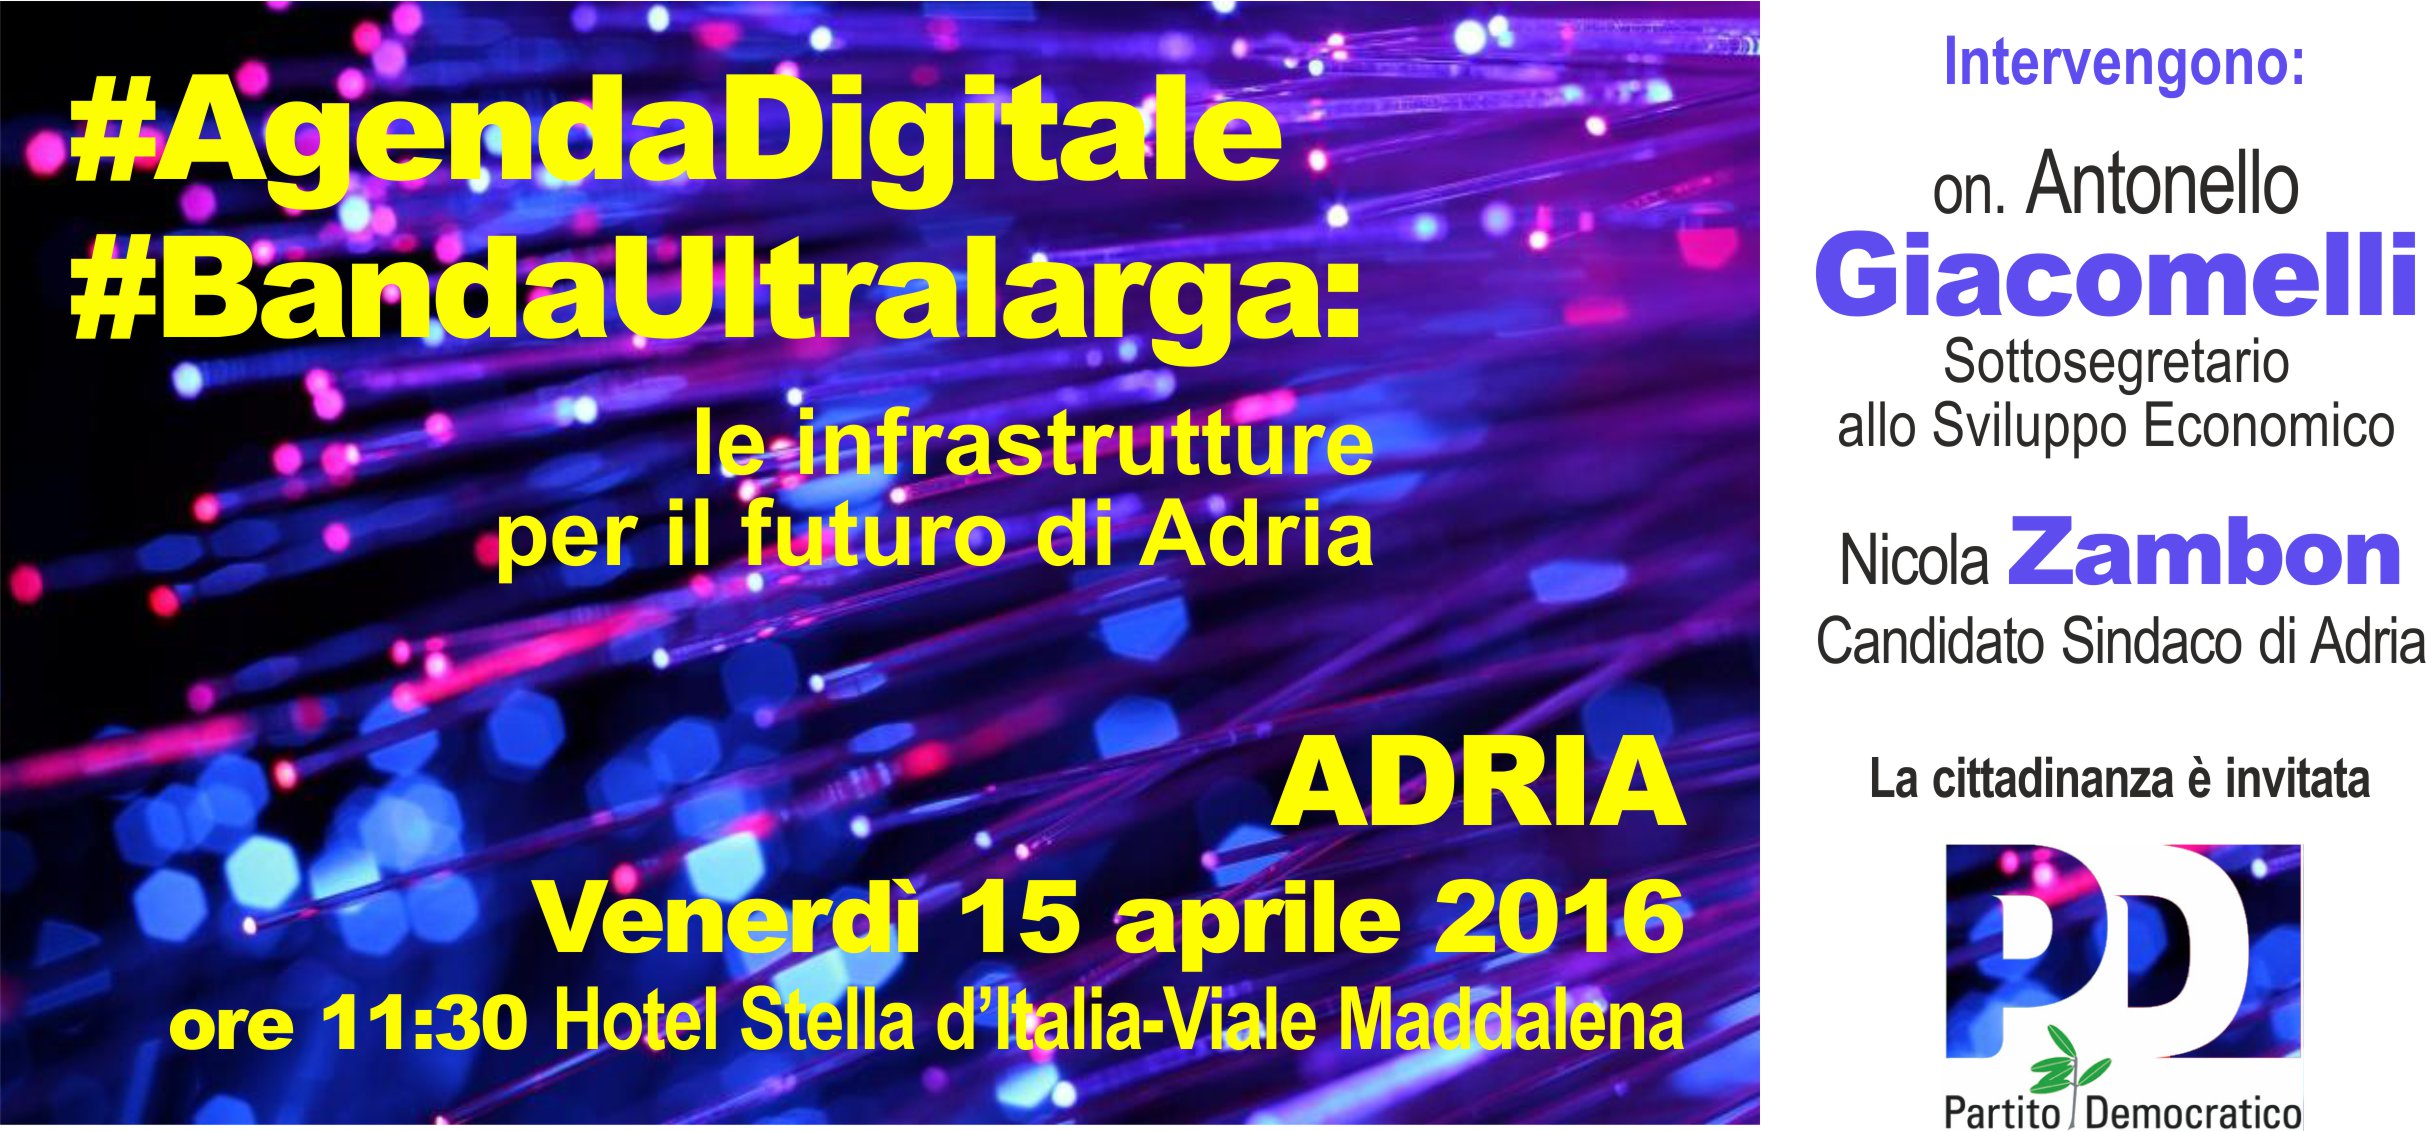 Al momento stai visualizzando #AgendaDigitale #BandaUltralarga: le infrastrutture per il futuro di Adria